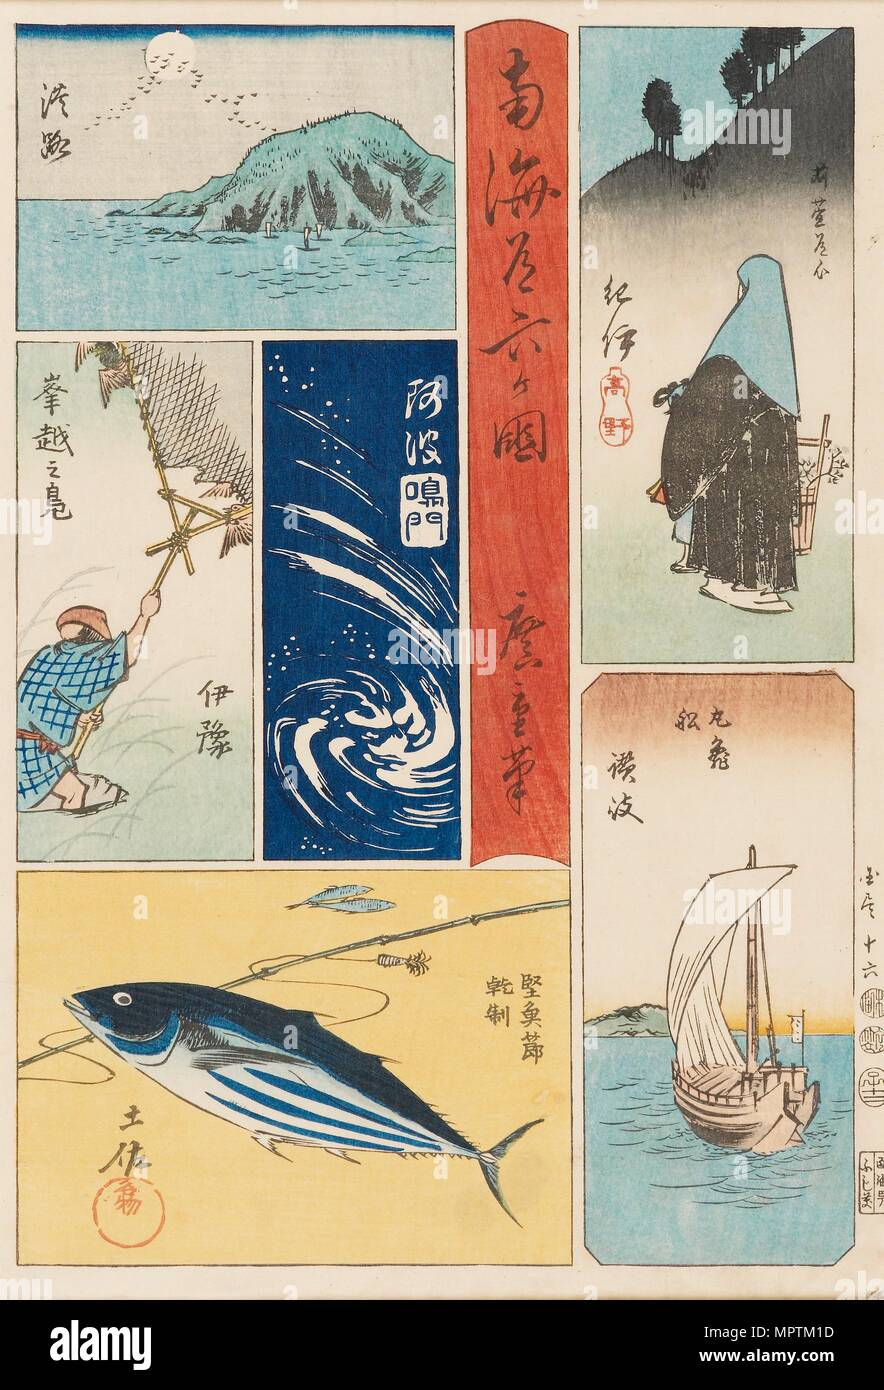 L'Ukiyo-e imprimer - Nankaido Rokka-koku, 19e siècle. Artiste : Ando Hiroshige. Banque D'Images